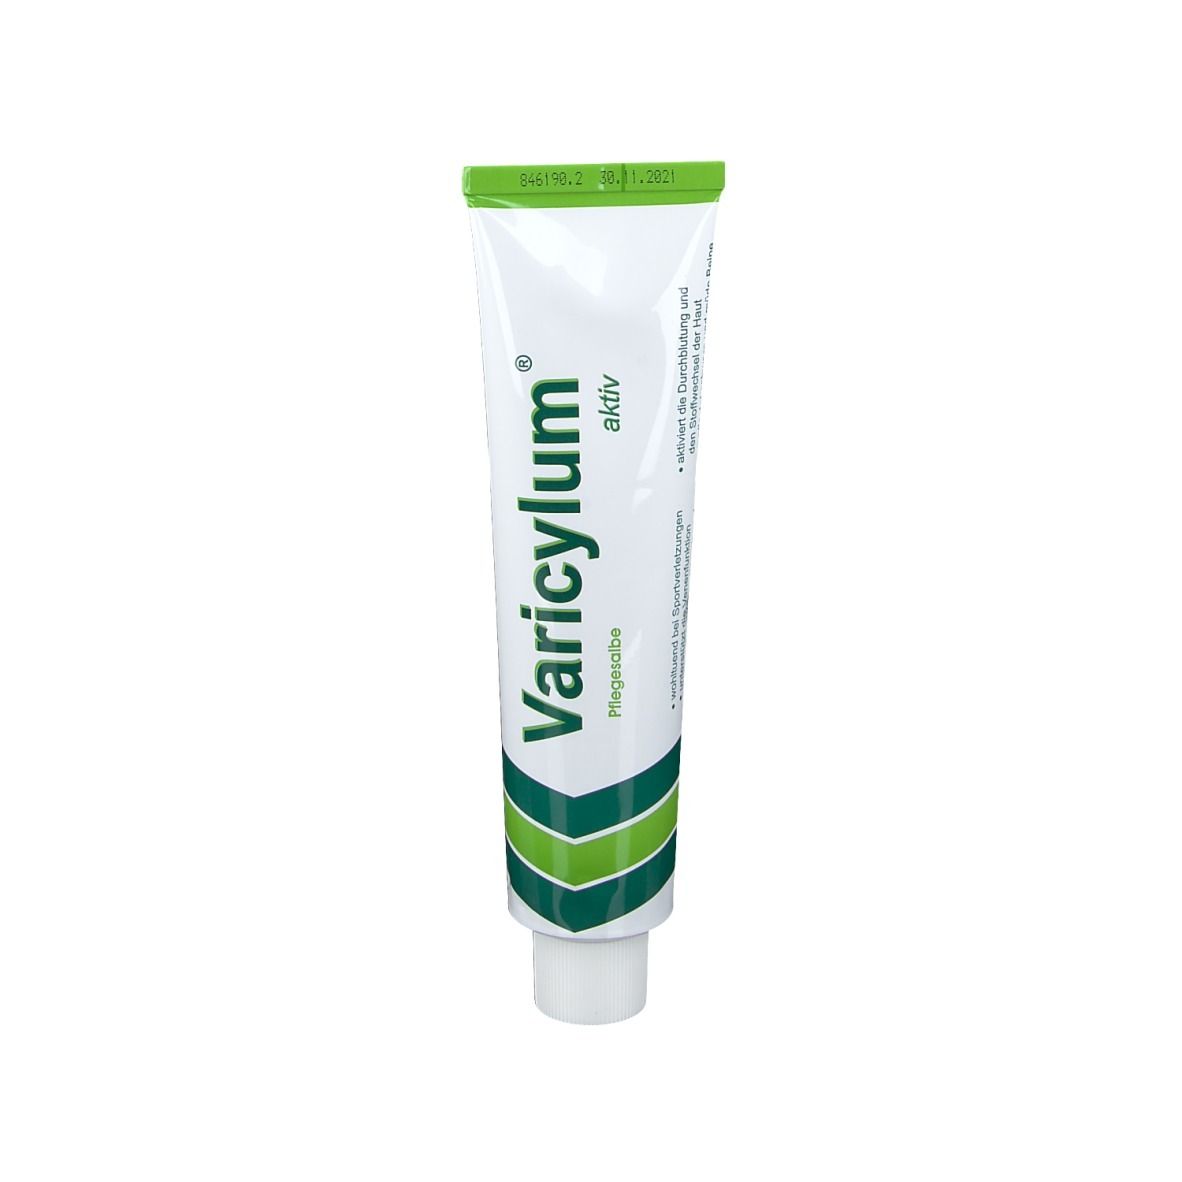 Varicylum® aktiv Pflegesalbe